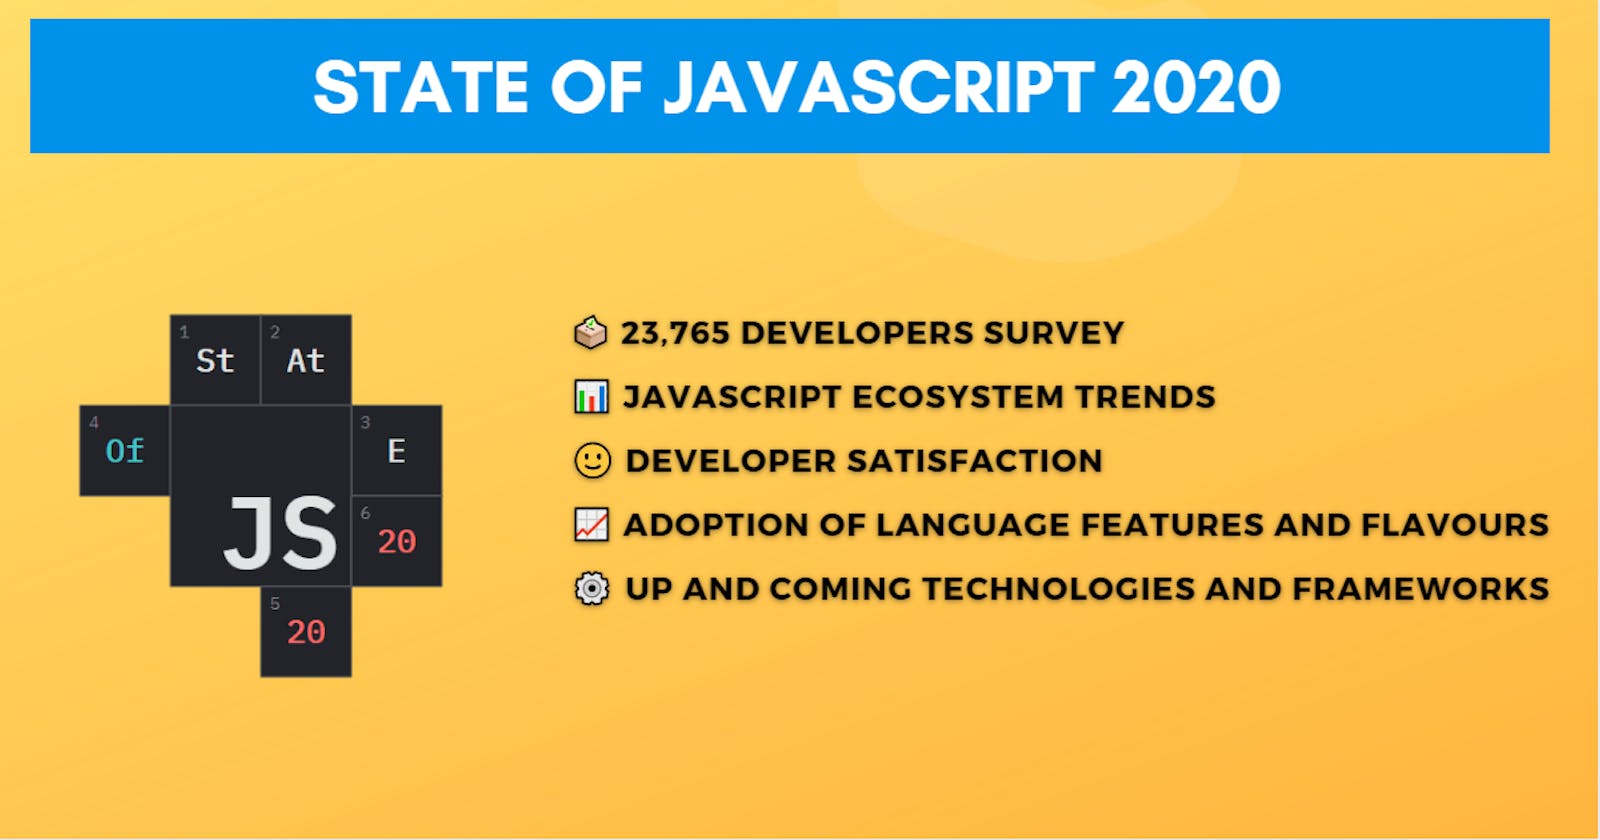 State of Javascript 2020